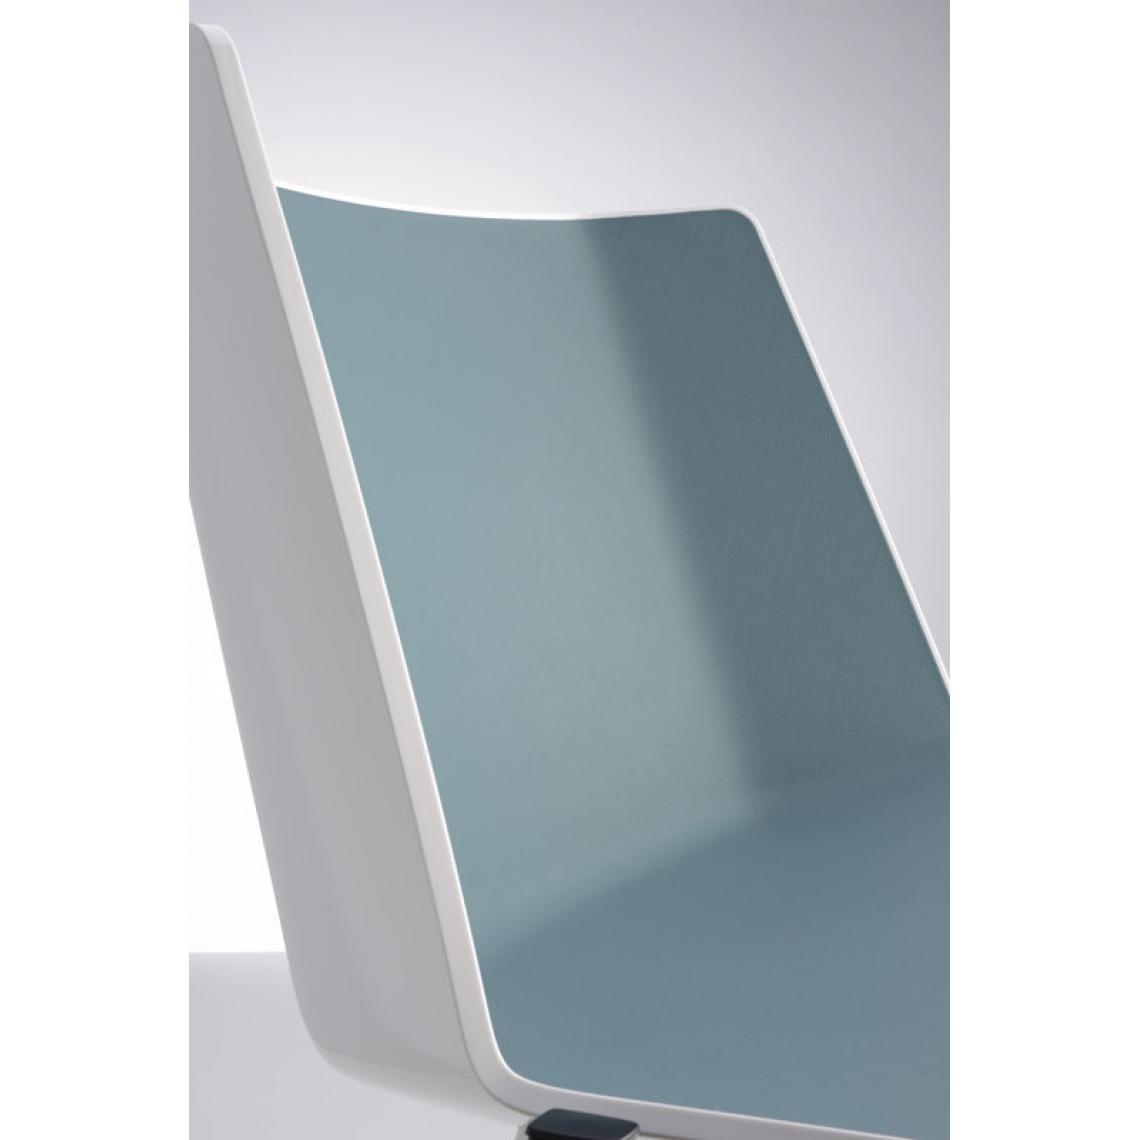 Mdf Italia - Chaise AÏKU - blanc brillant/bleu moyen - chêne marron lasuré - 4 pieds en chêne - Chaises